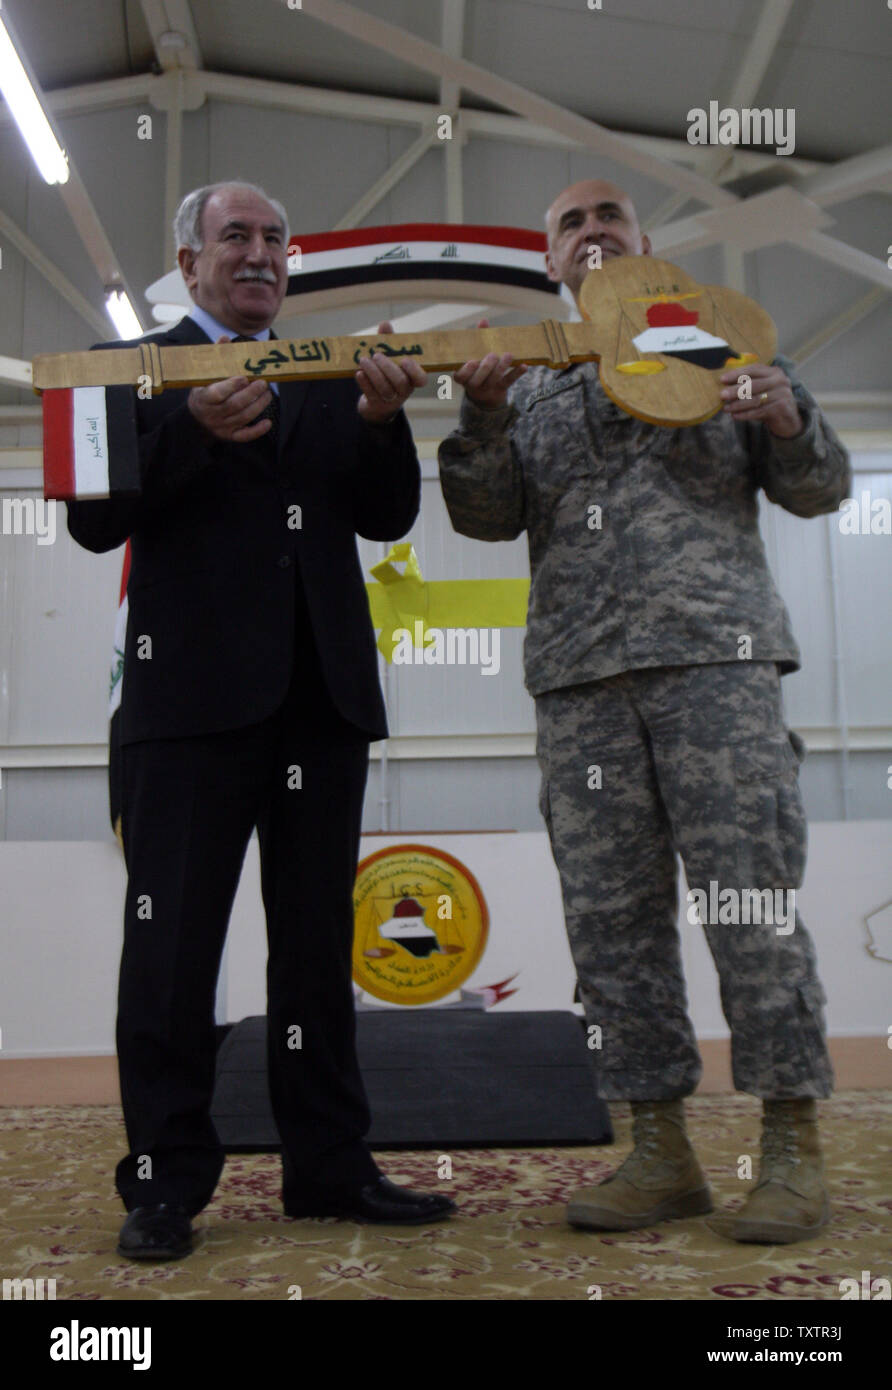 Le Brigadier-général David Quantock (R) des mains du ministre de la Justice irakien Dara Nur al-Din une clé en bois symbolique à la prison de Taji, un 107 millions de dollars composé qui peut contenir jusqu'à 5 600 détenus et est située à environ 25 kilomètres (15 milles) au nord de Bagdad, lors d'une cérémonie de transfert de contrôle de l'un des deux autres nous' de détention pour les autorités irakiennes le 15 mars 2010. UPI/Ali Jasim Banque D'Images